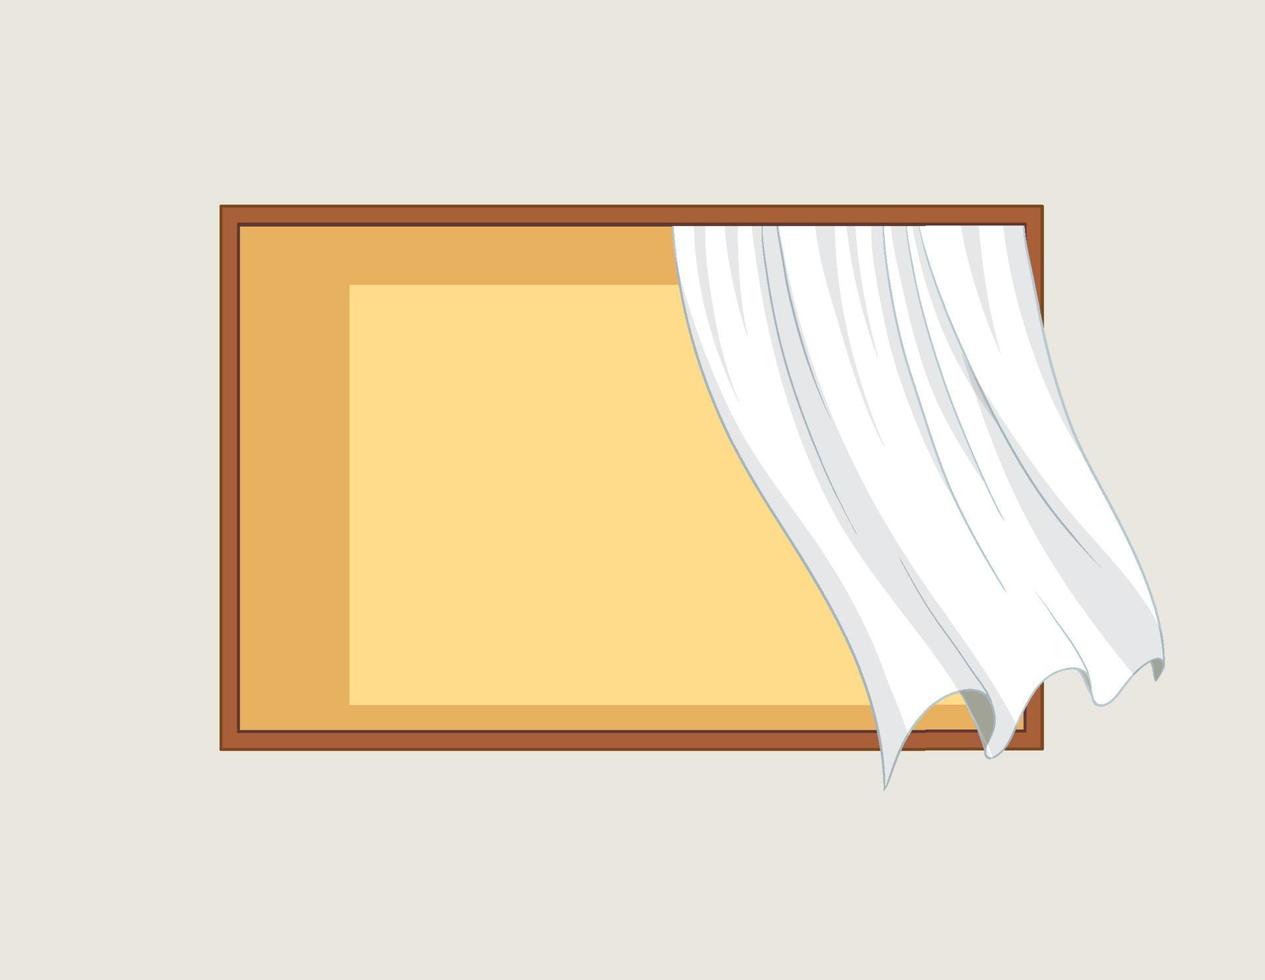 eenvoudig raam met wit gordijn vector